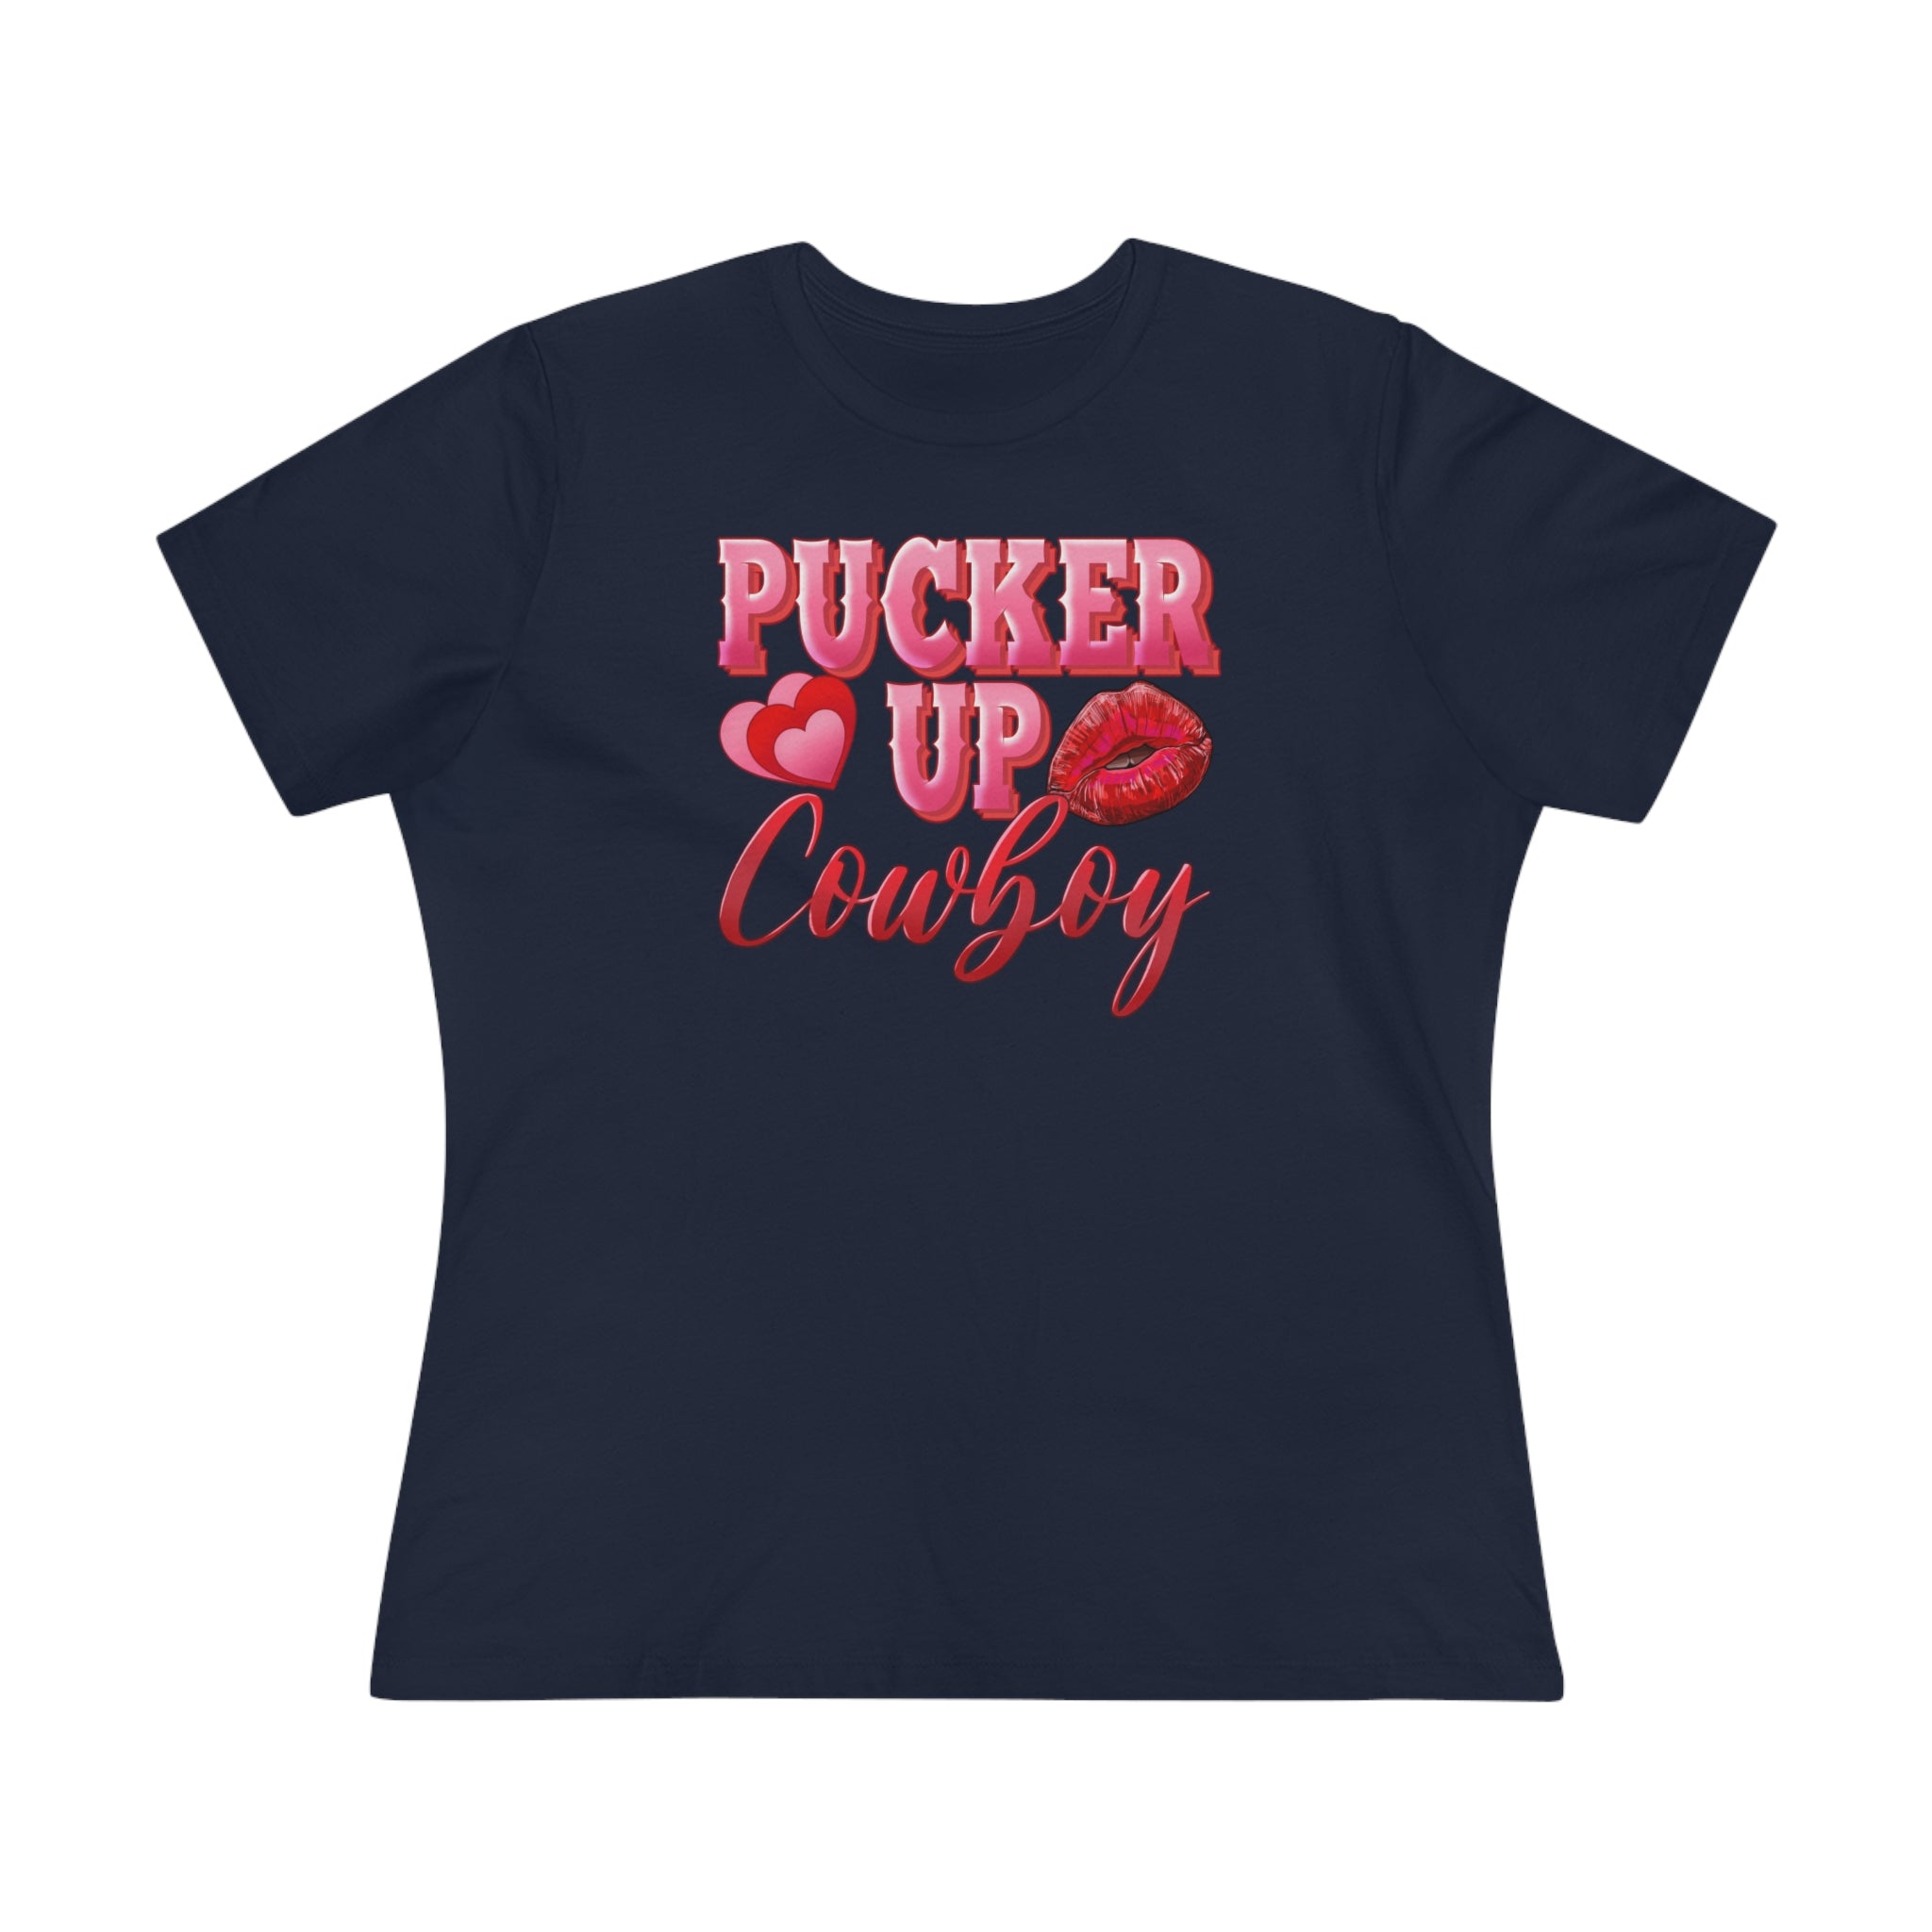 Pucker Up Cowboy Women's Premium Tee